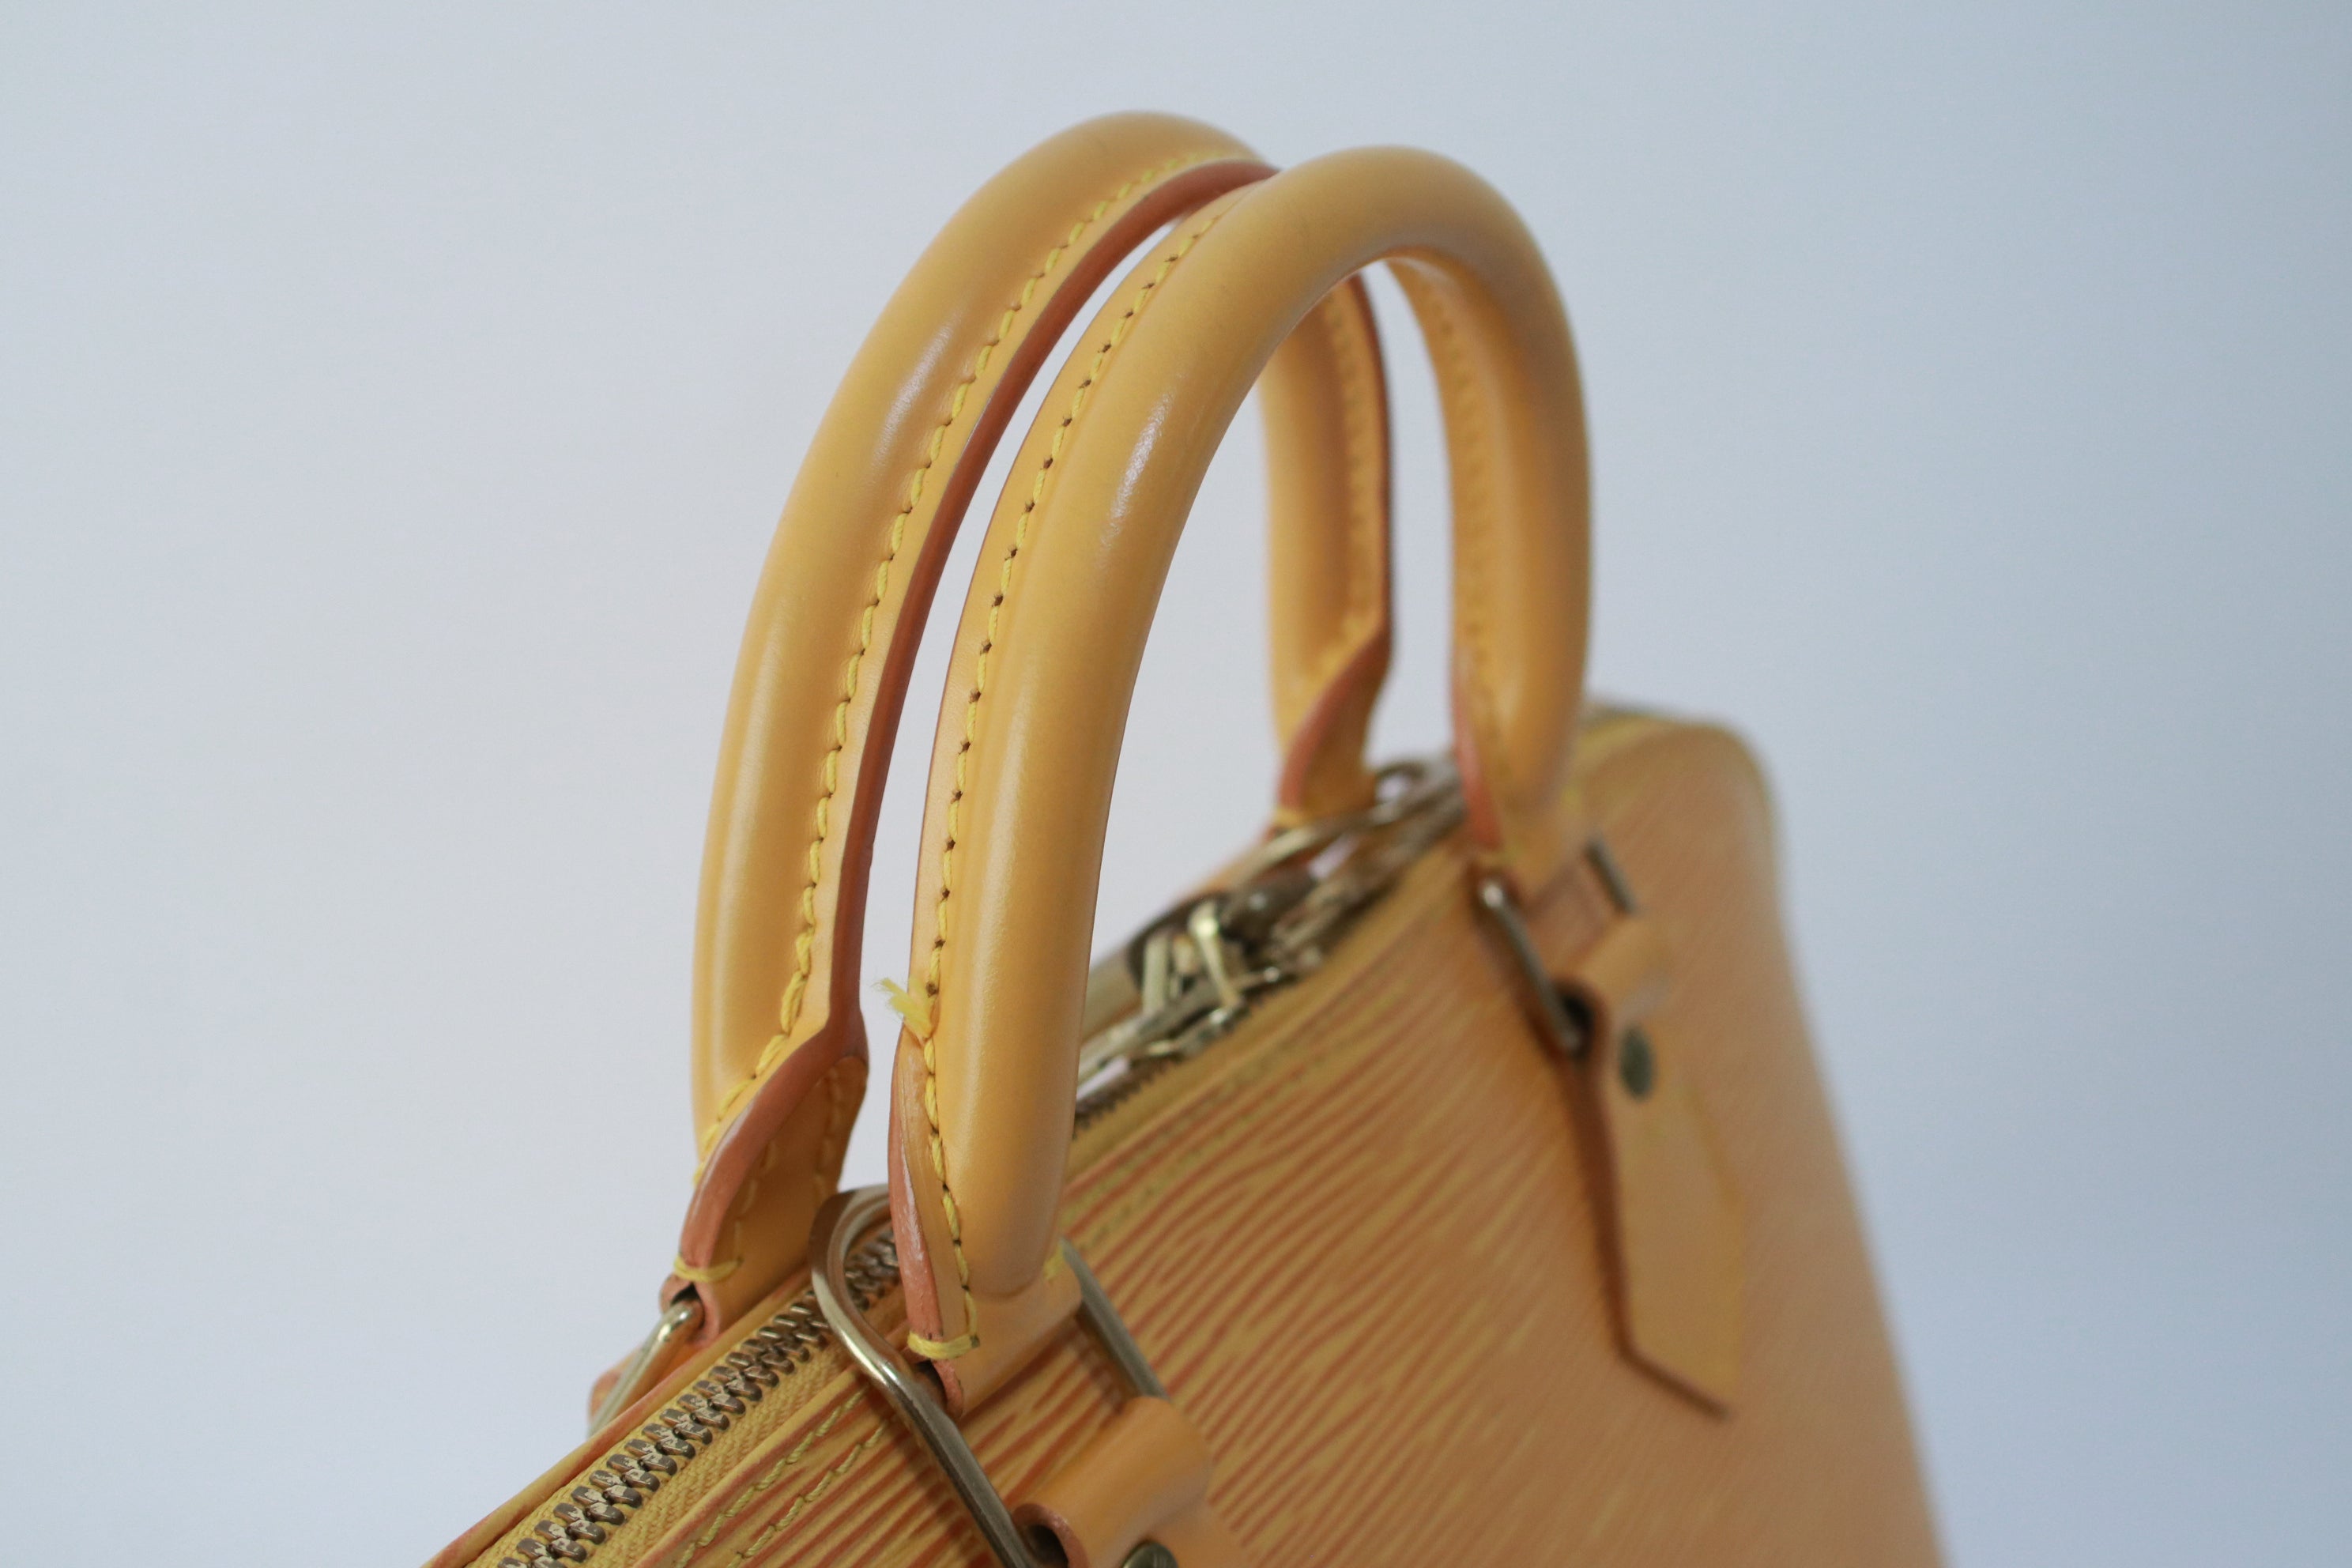 Louis Vuitton Alma PM Epi Handbag Yellow Used (7271)